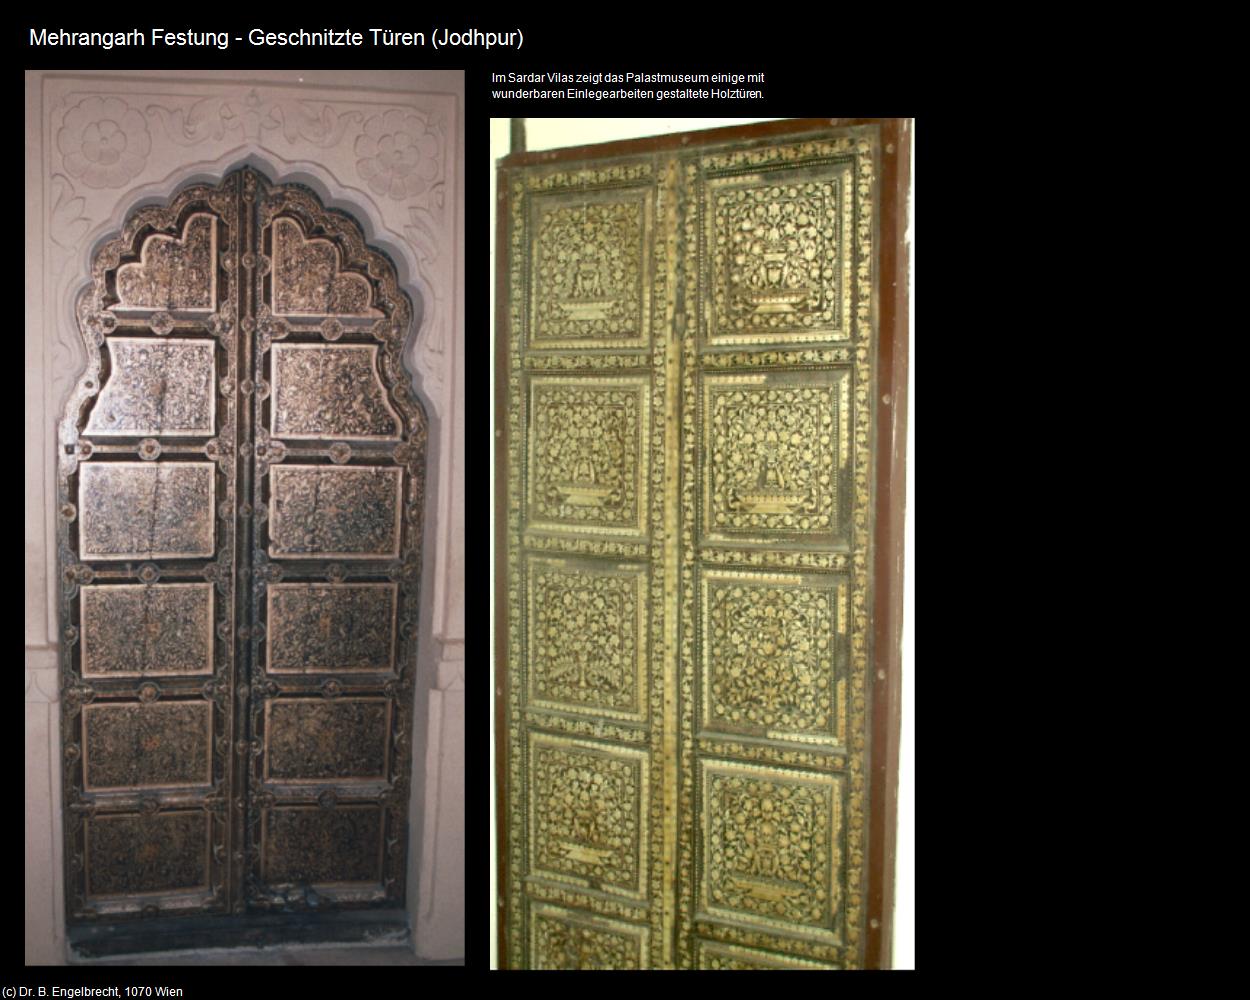 Mehrangarh Festung-Geschnitzte Türen (Jodhpur) in Rajasthan - das Land der Könige